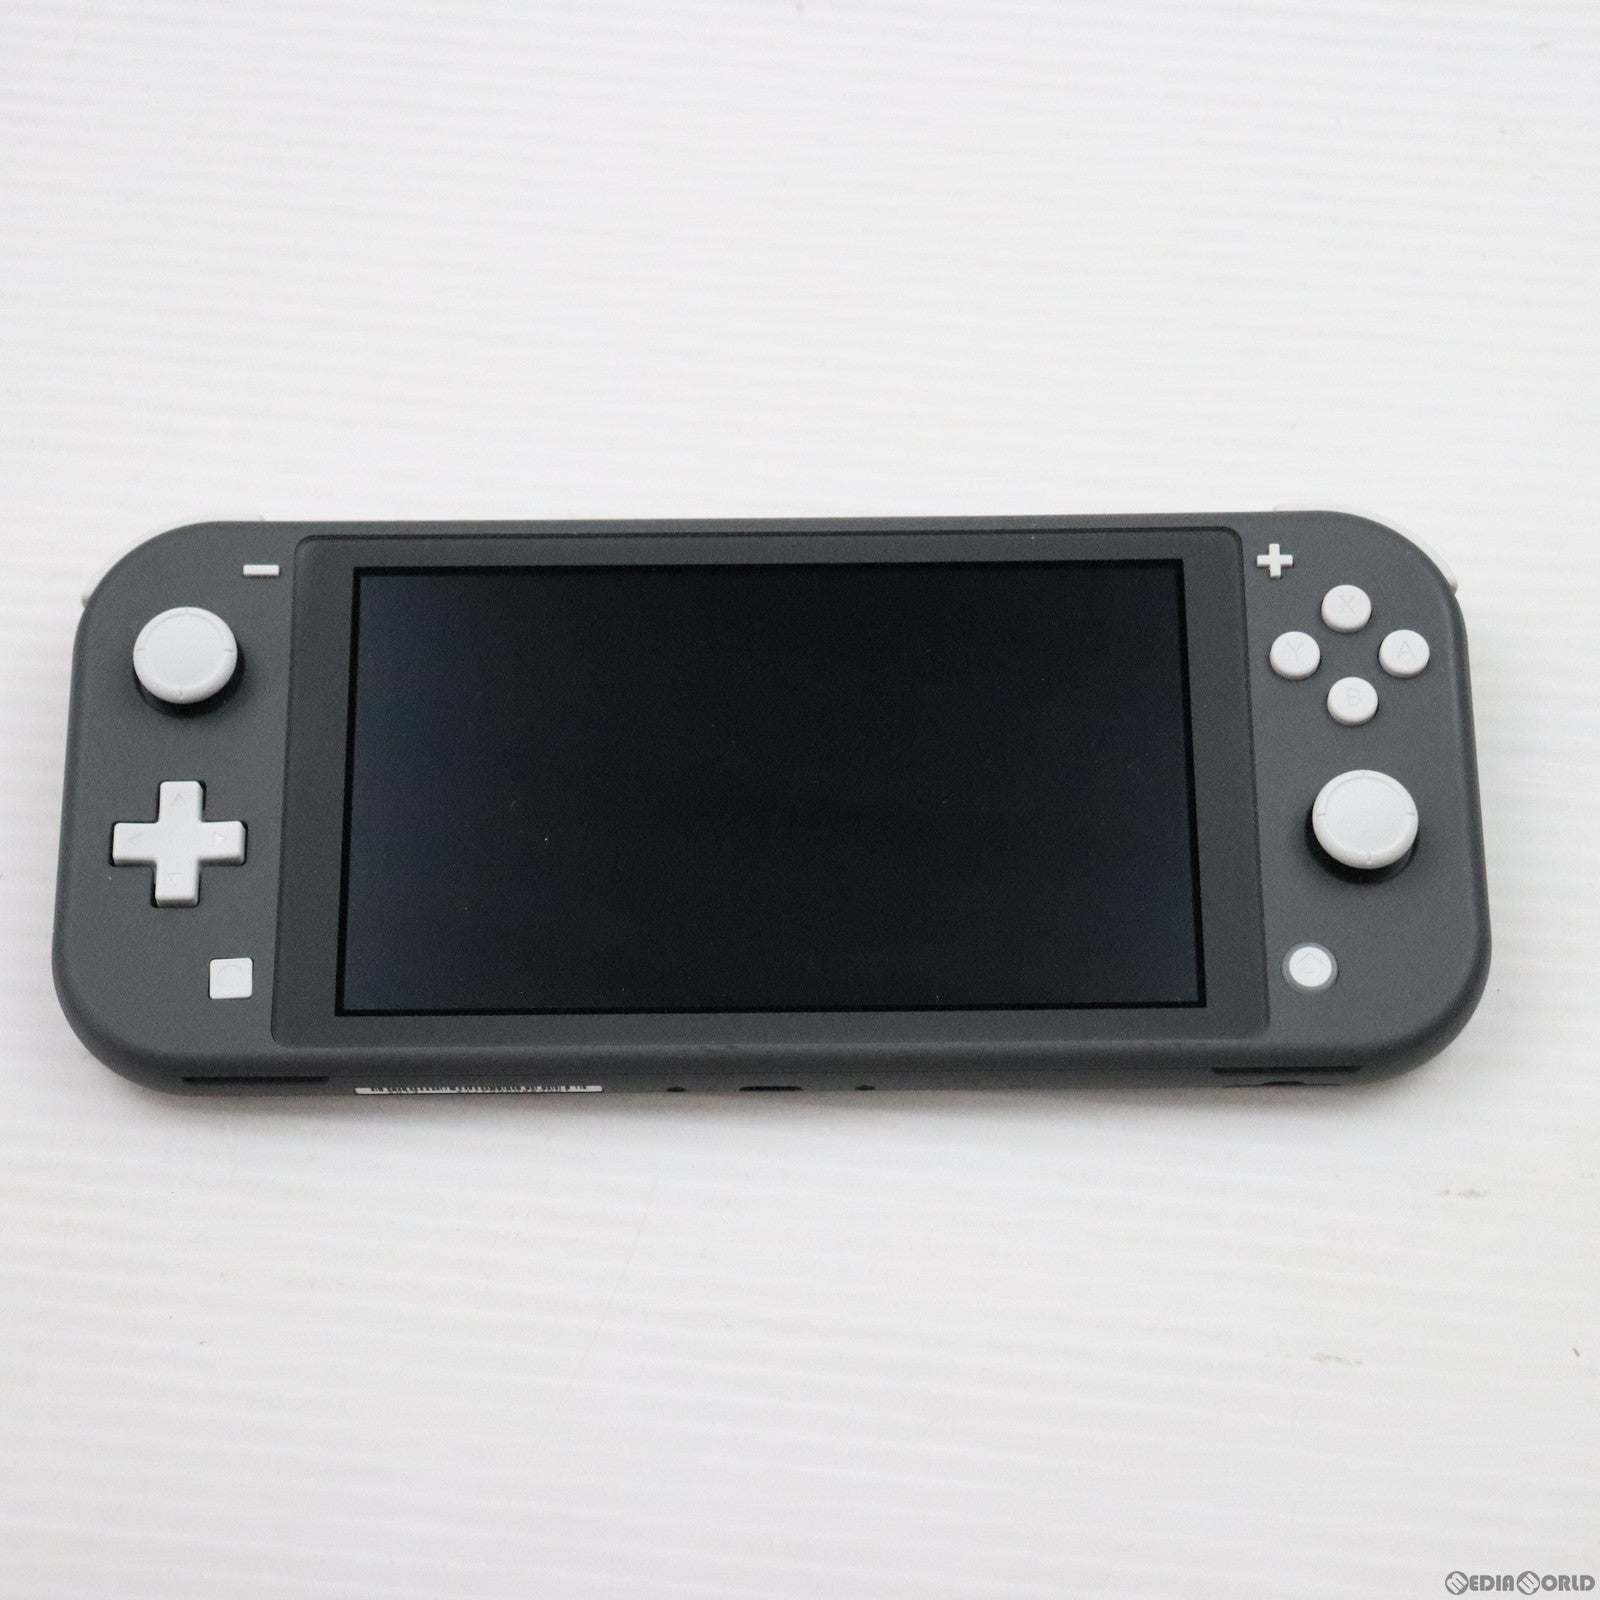 中古即納】[Switch](本体)Nintendo Switch Lite(ニンテンドースイッチライト) グレー(HDH-S-GAZAA)